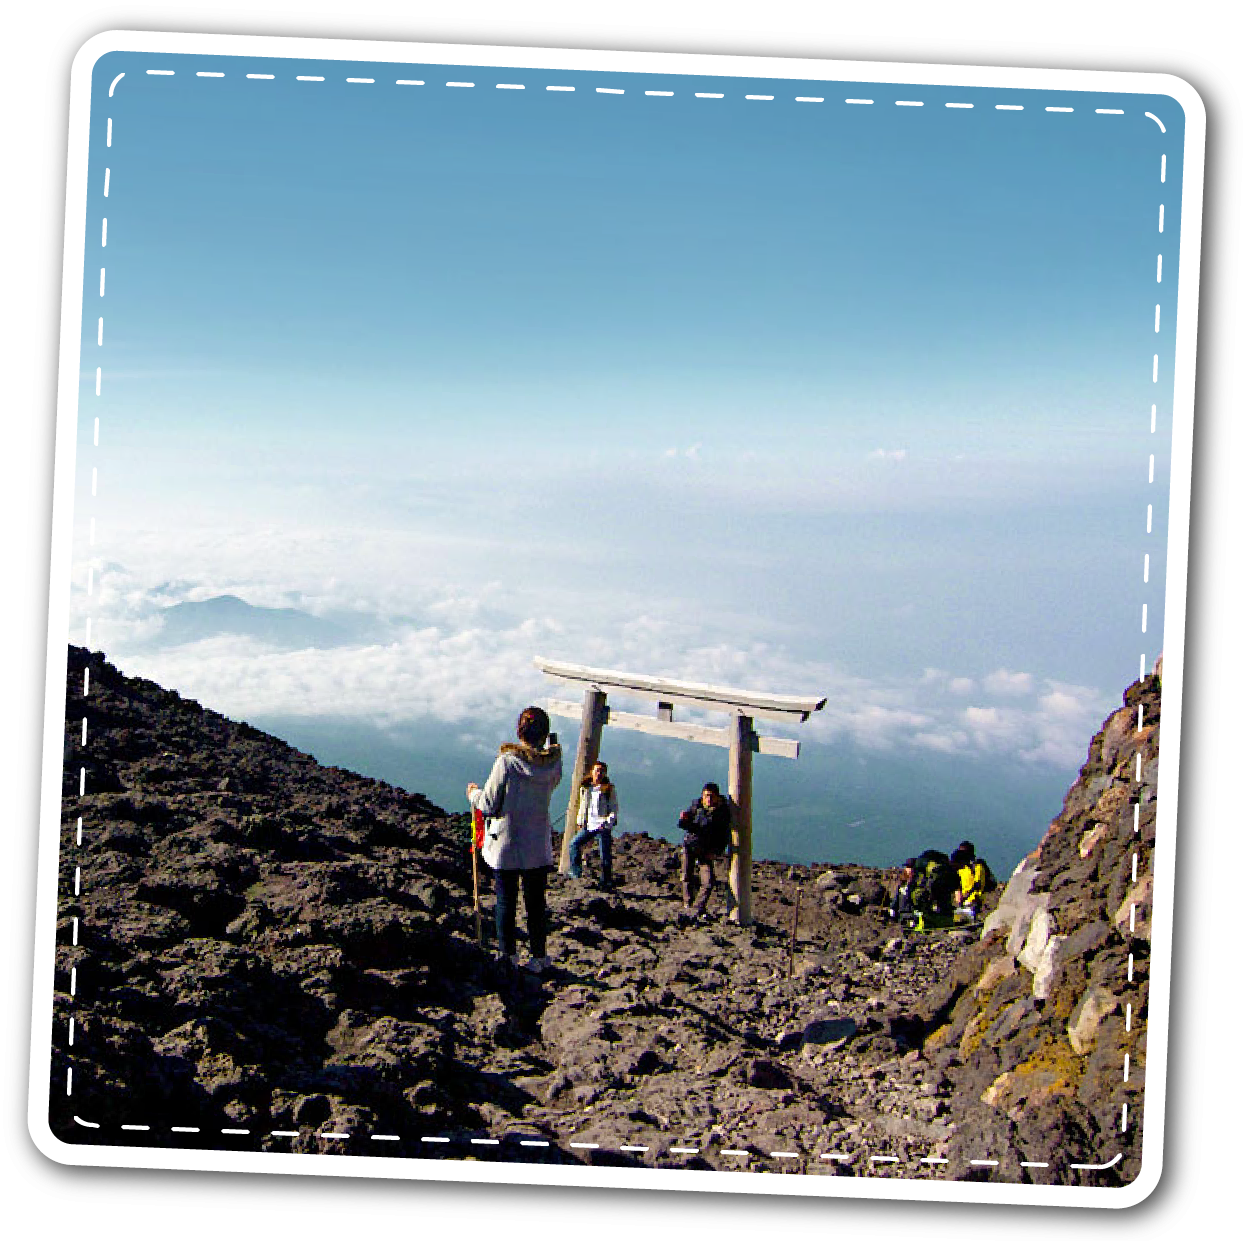 ปีนฟูจิ, เที่ยวภูเขาไฟฟูจิ, Climbing, Mt.Fuji Climbing Tour, แพคเกจปีนฟูจิ, ปีนภูเขาไฟฟูจิ, Mount Fuji Climbing